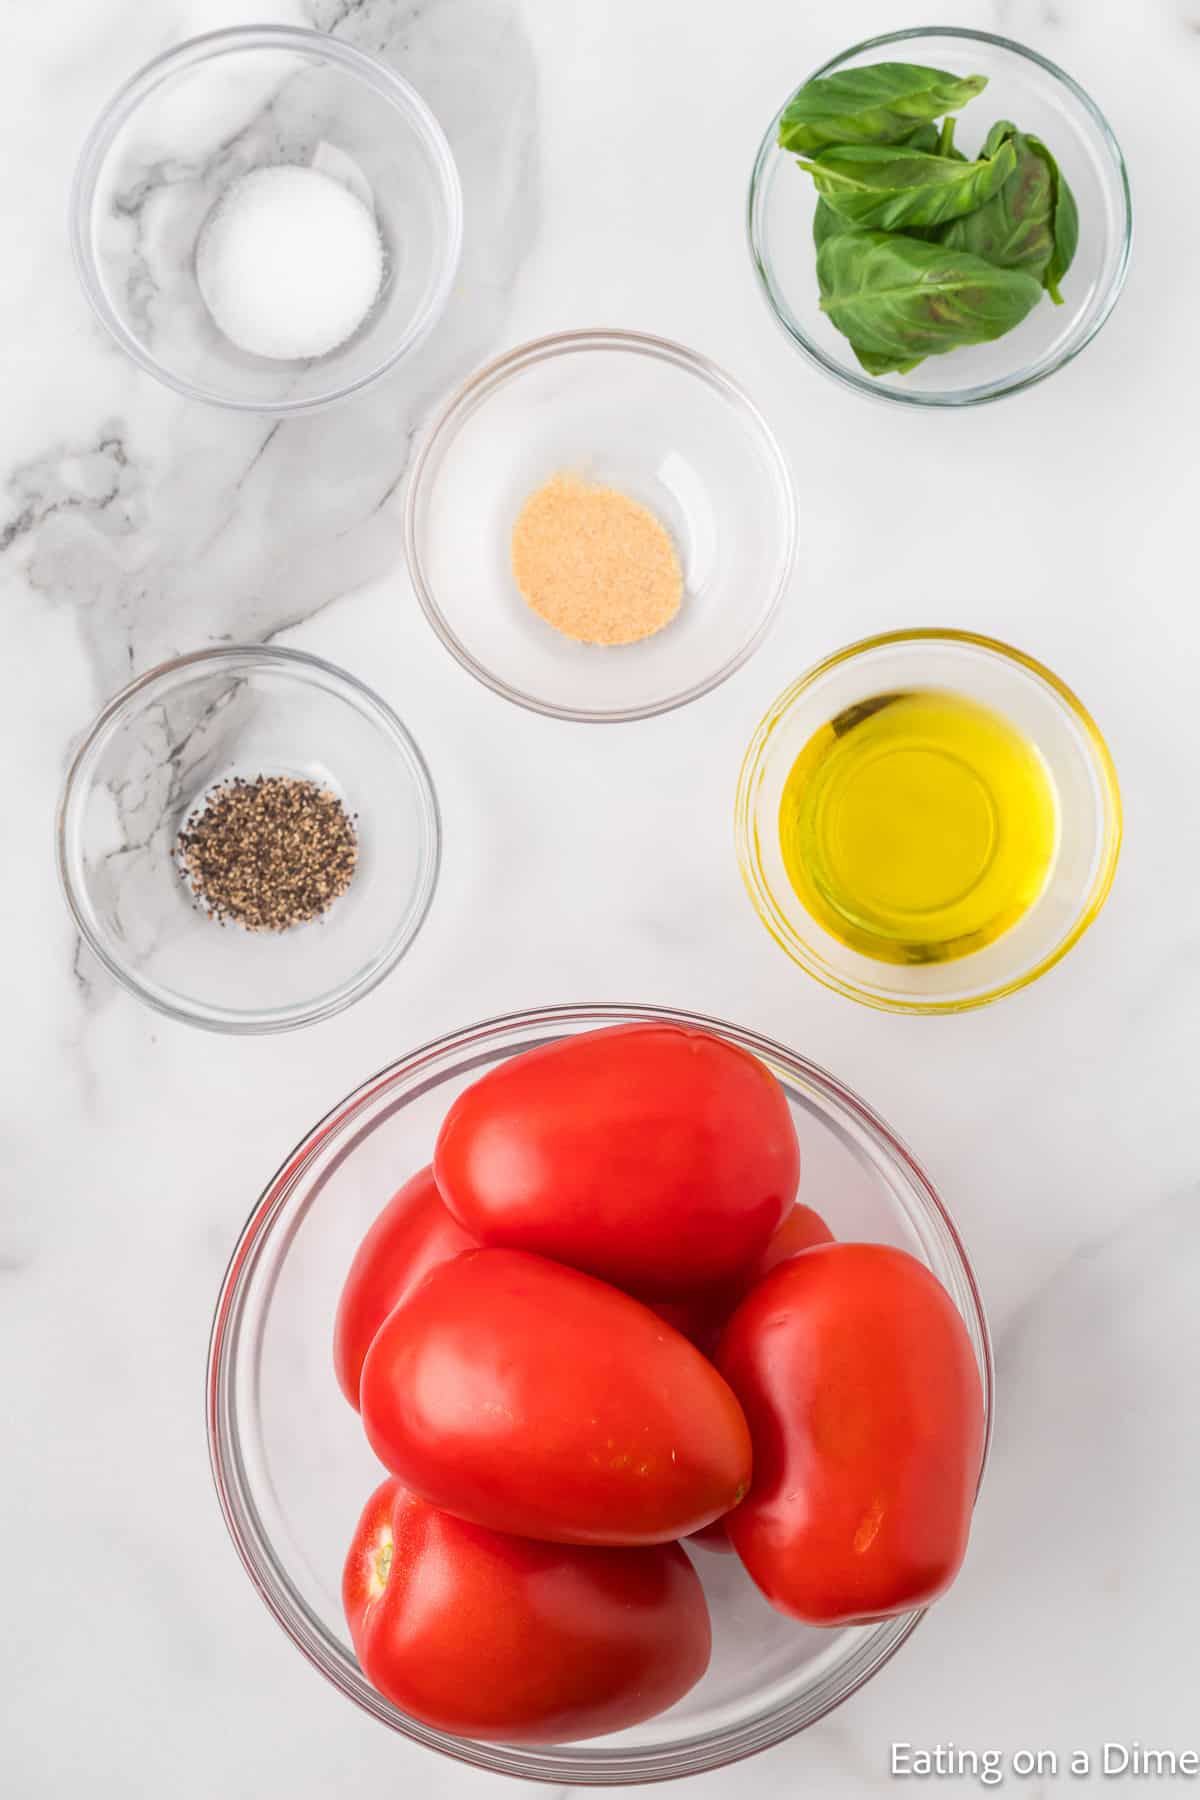 Ingredients - Roma tomatoes, pepper, salt, garlic powder, oil, basil